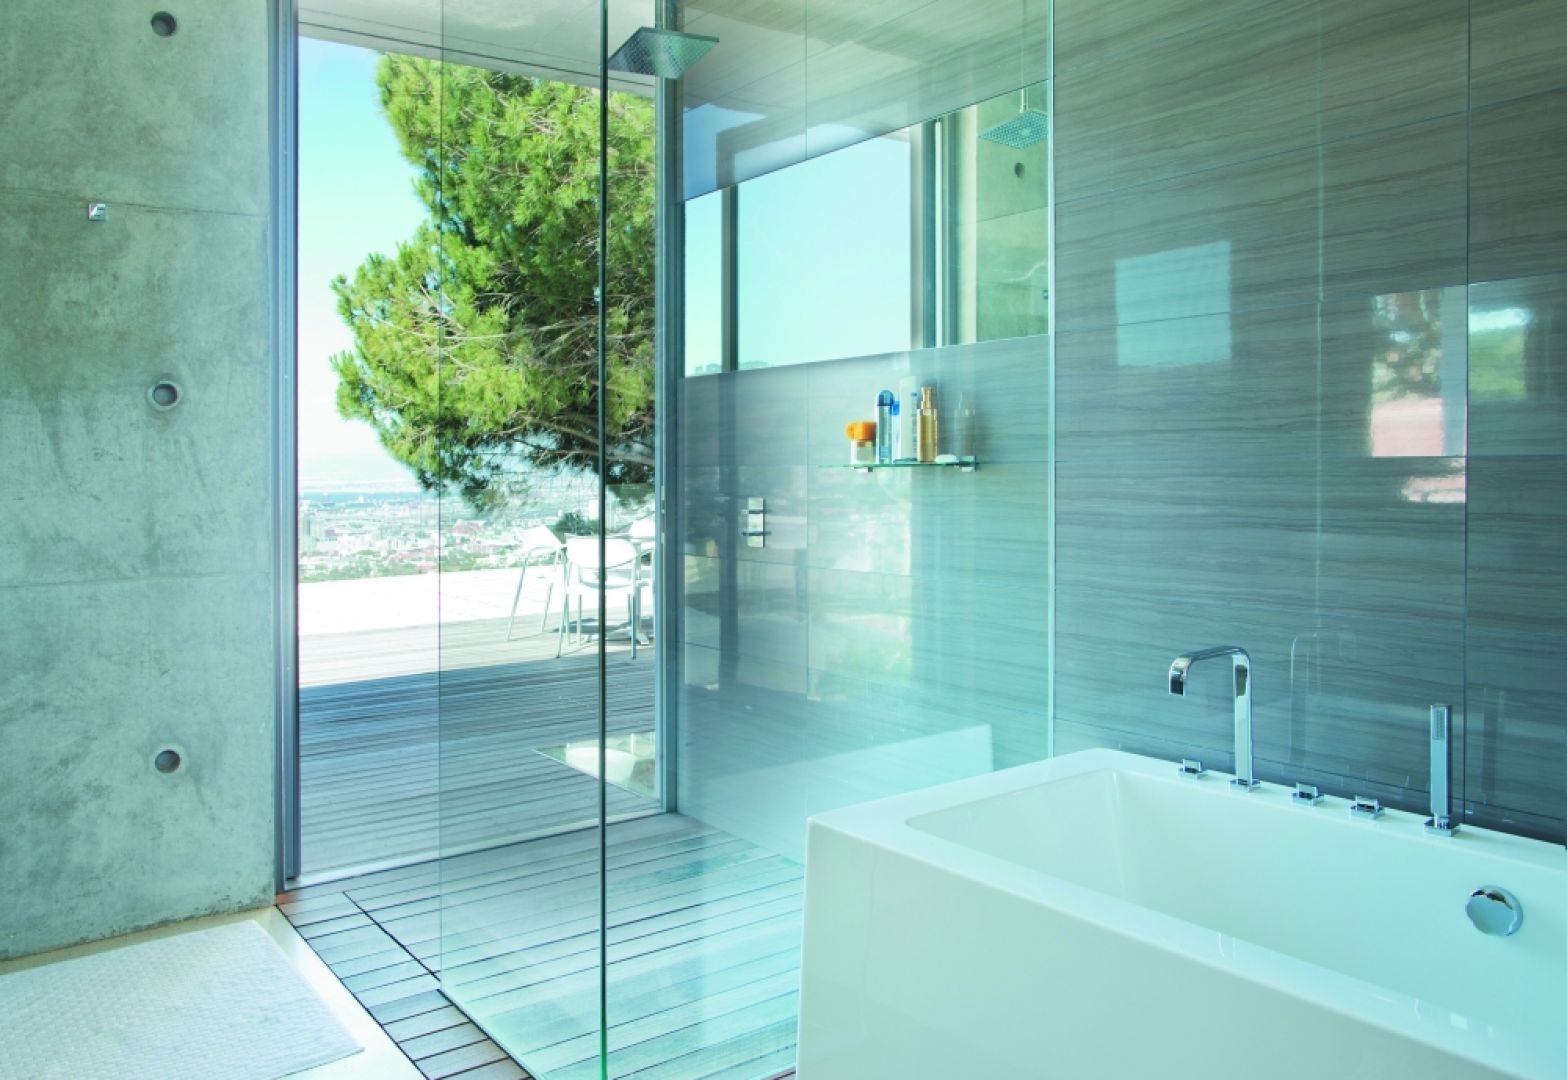 Decydując się na kabinę walk-in możemy swobodnie dobrać rozmiar przestrzeni prysznicowej, nie ograniczając się wielkością brodzika prysznicowego. Fot. Saint-Gobain Building Glass Polska